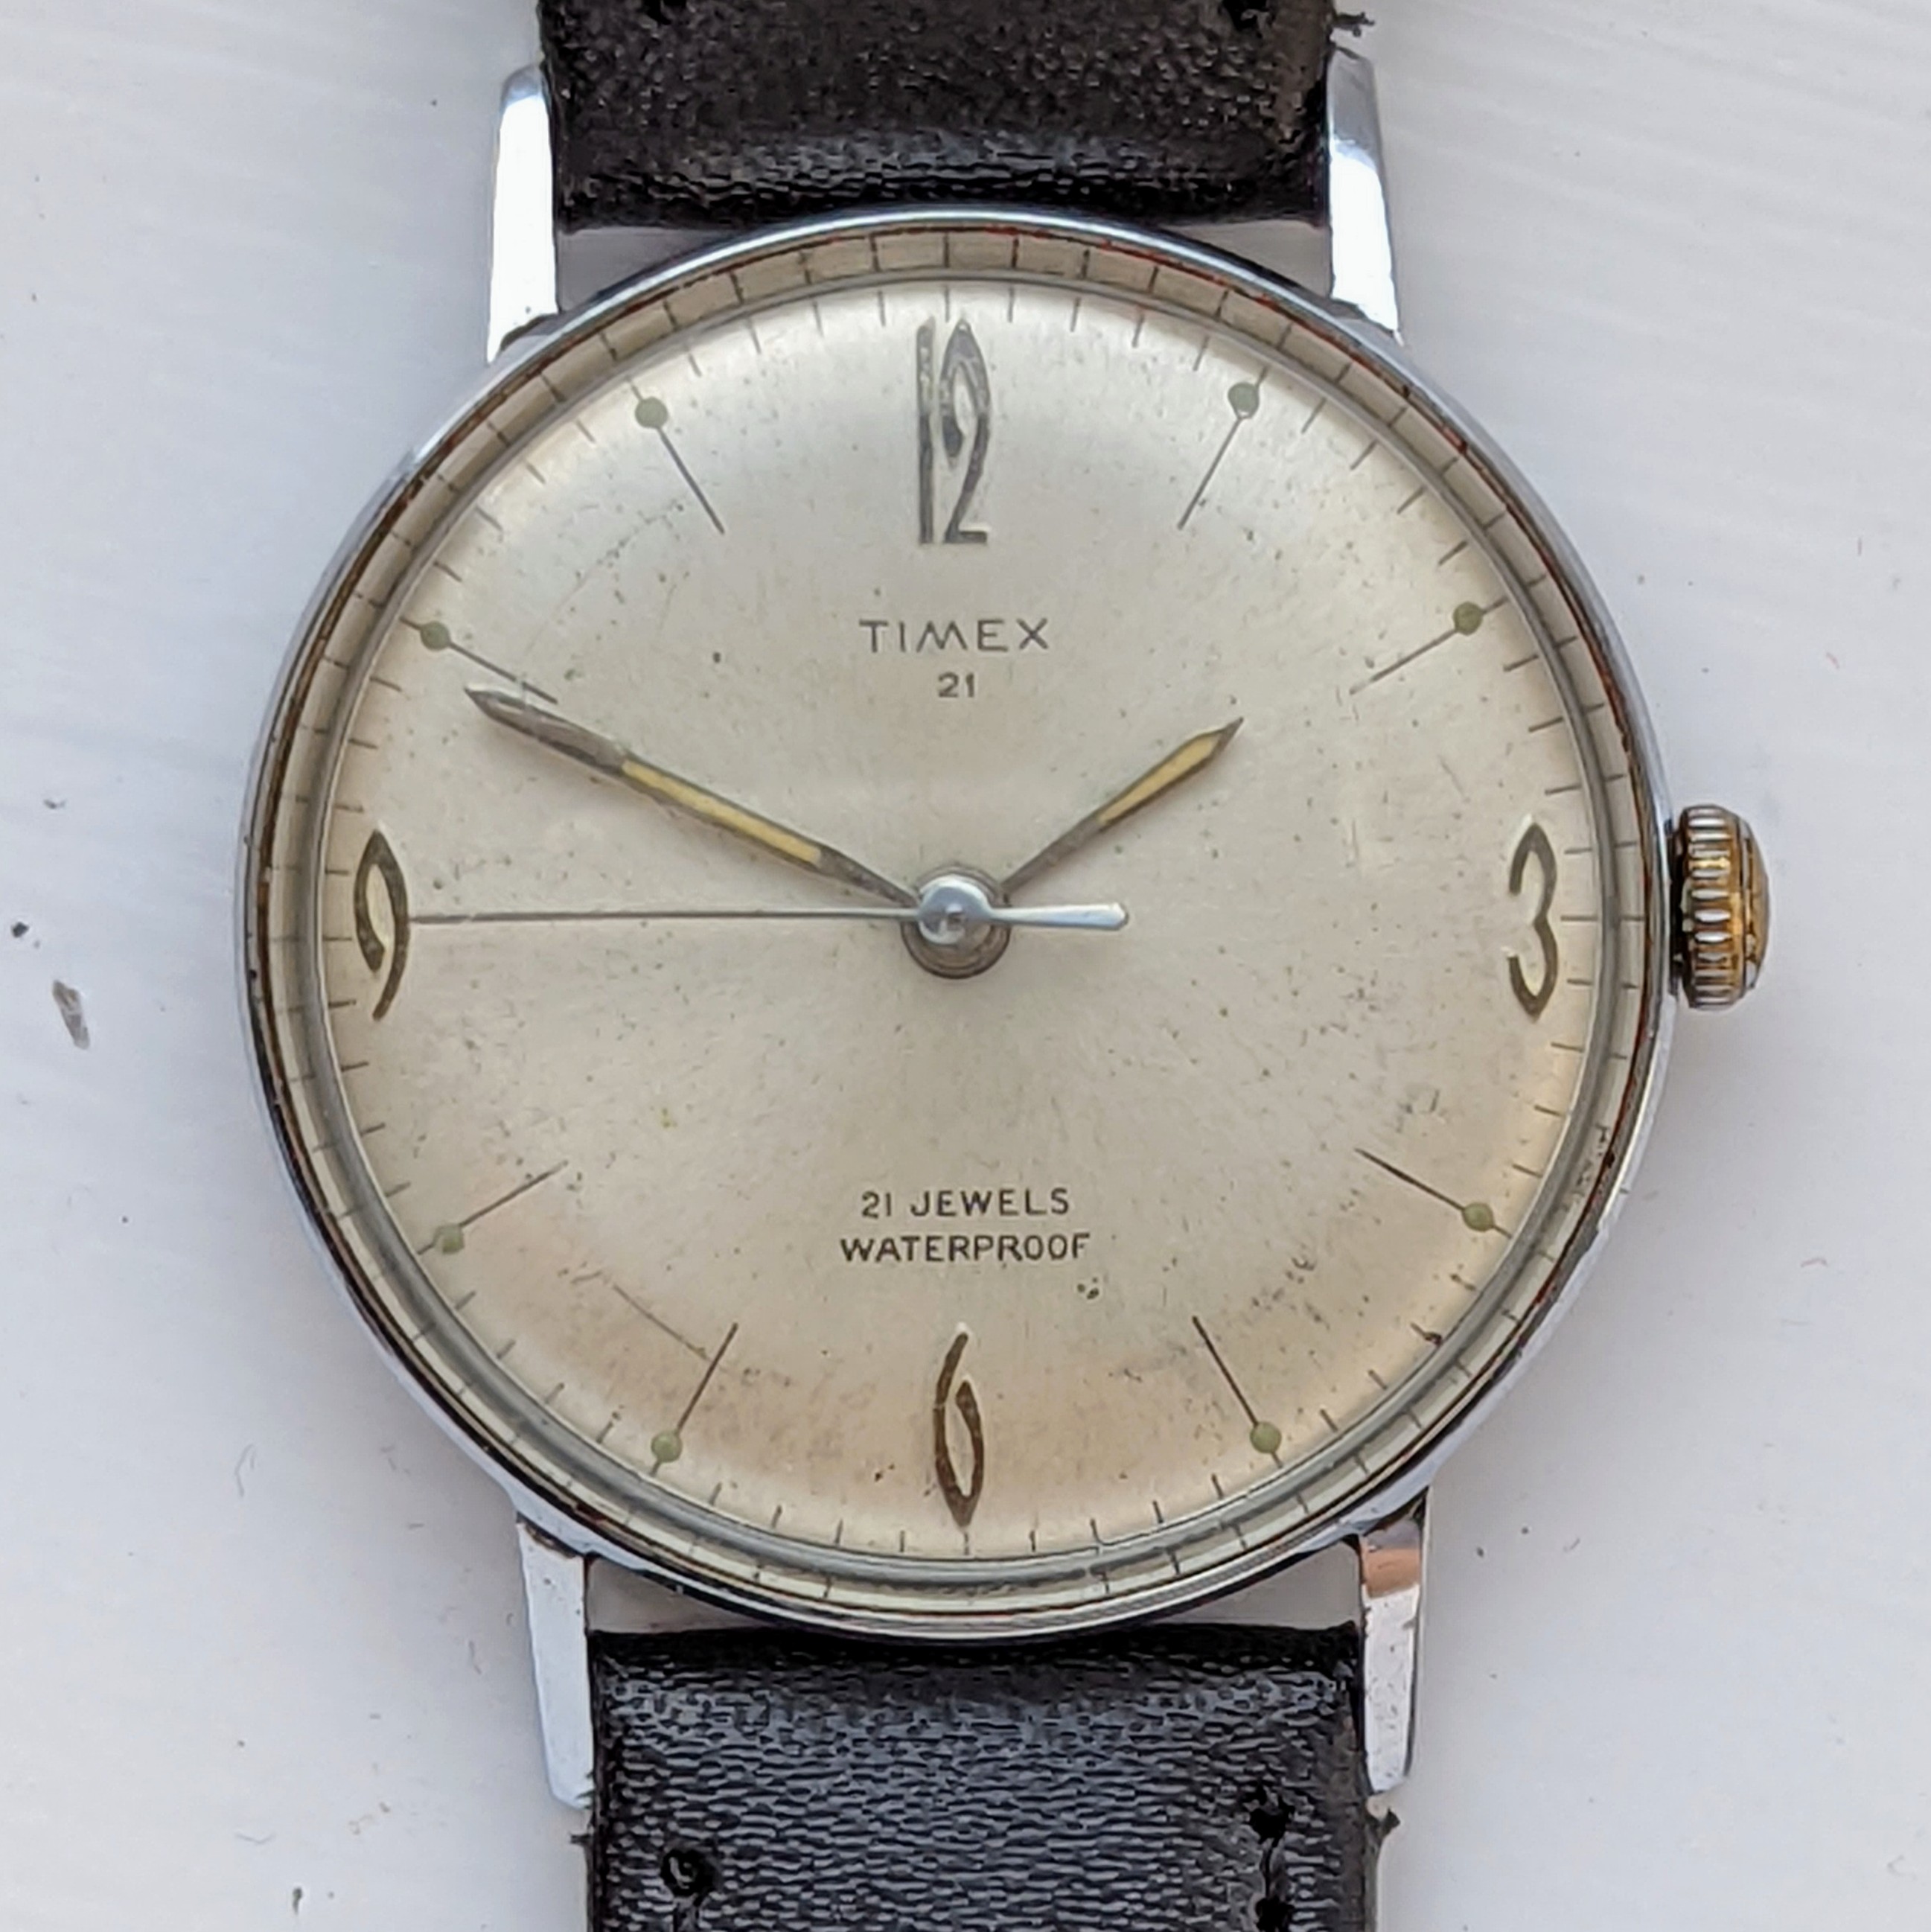 Timex 21 Jewel 1963 Ref. 6517 7263